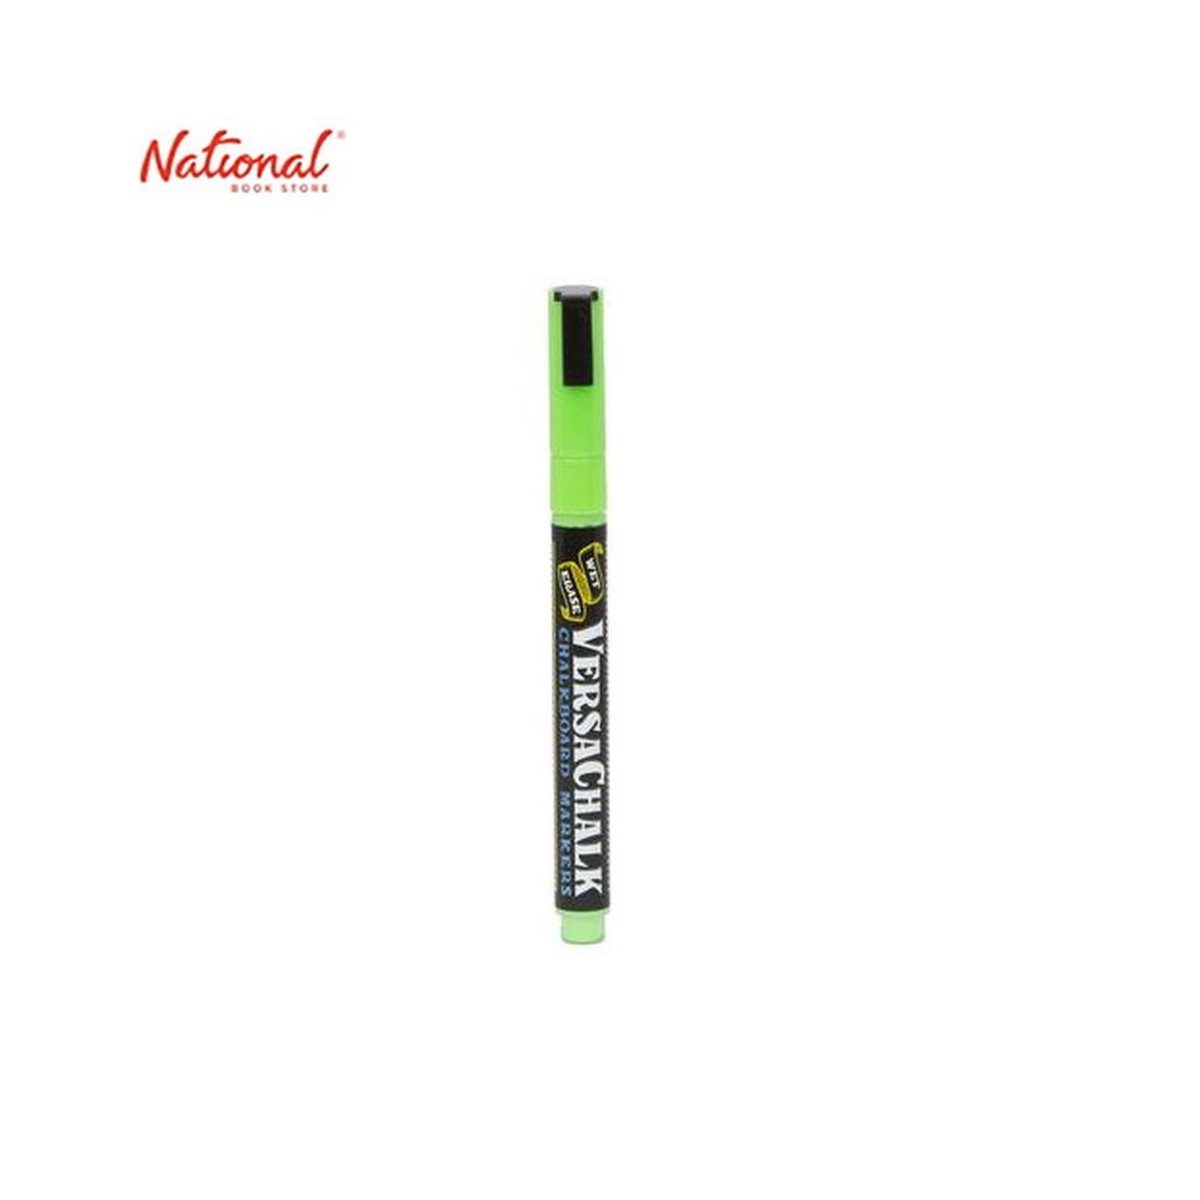 Versachalk Neon Green Chalk Marker (Fine) Singles